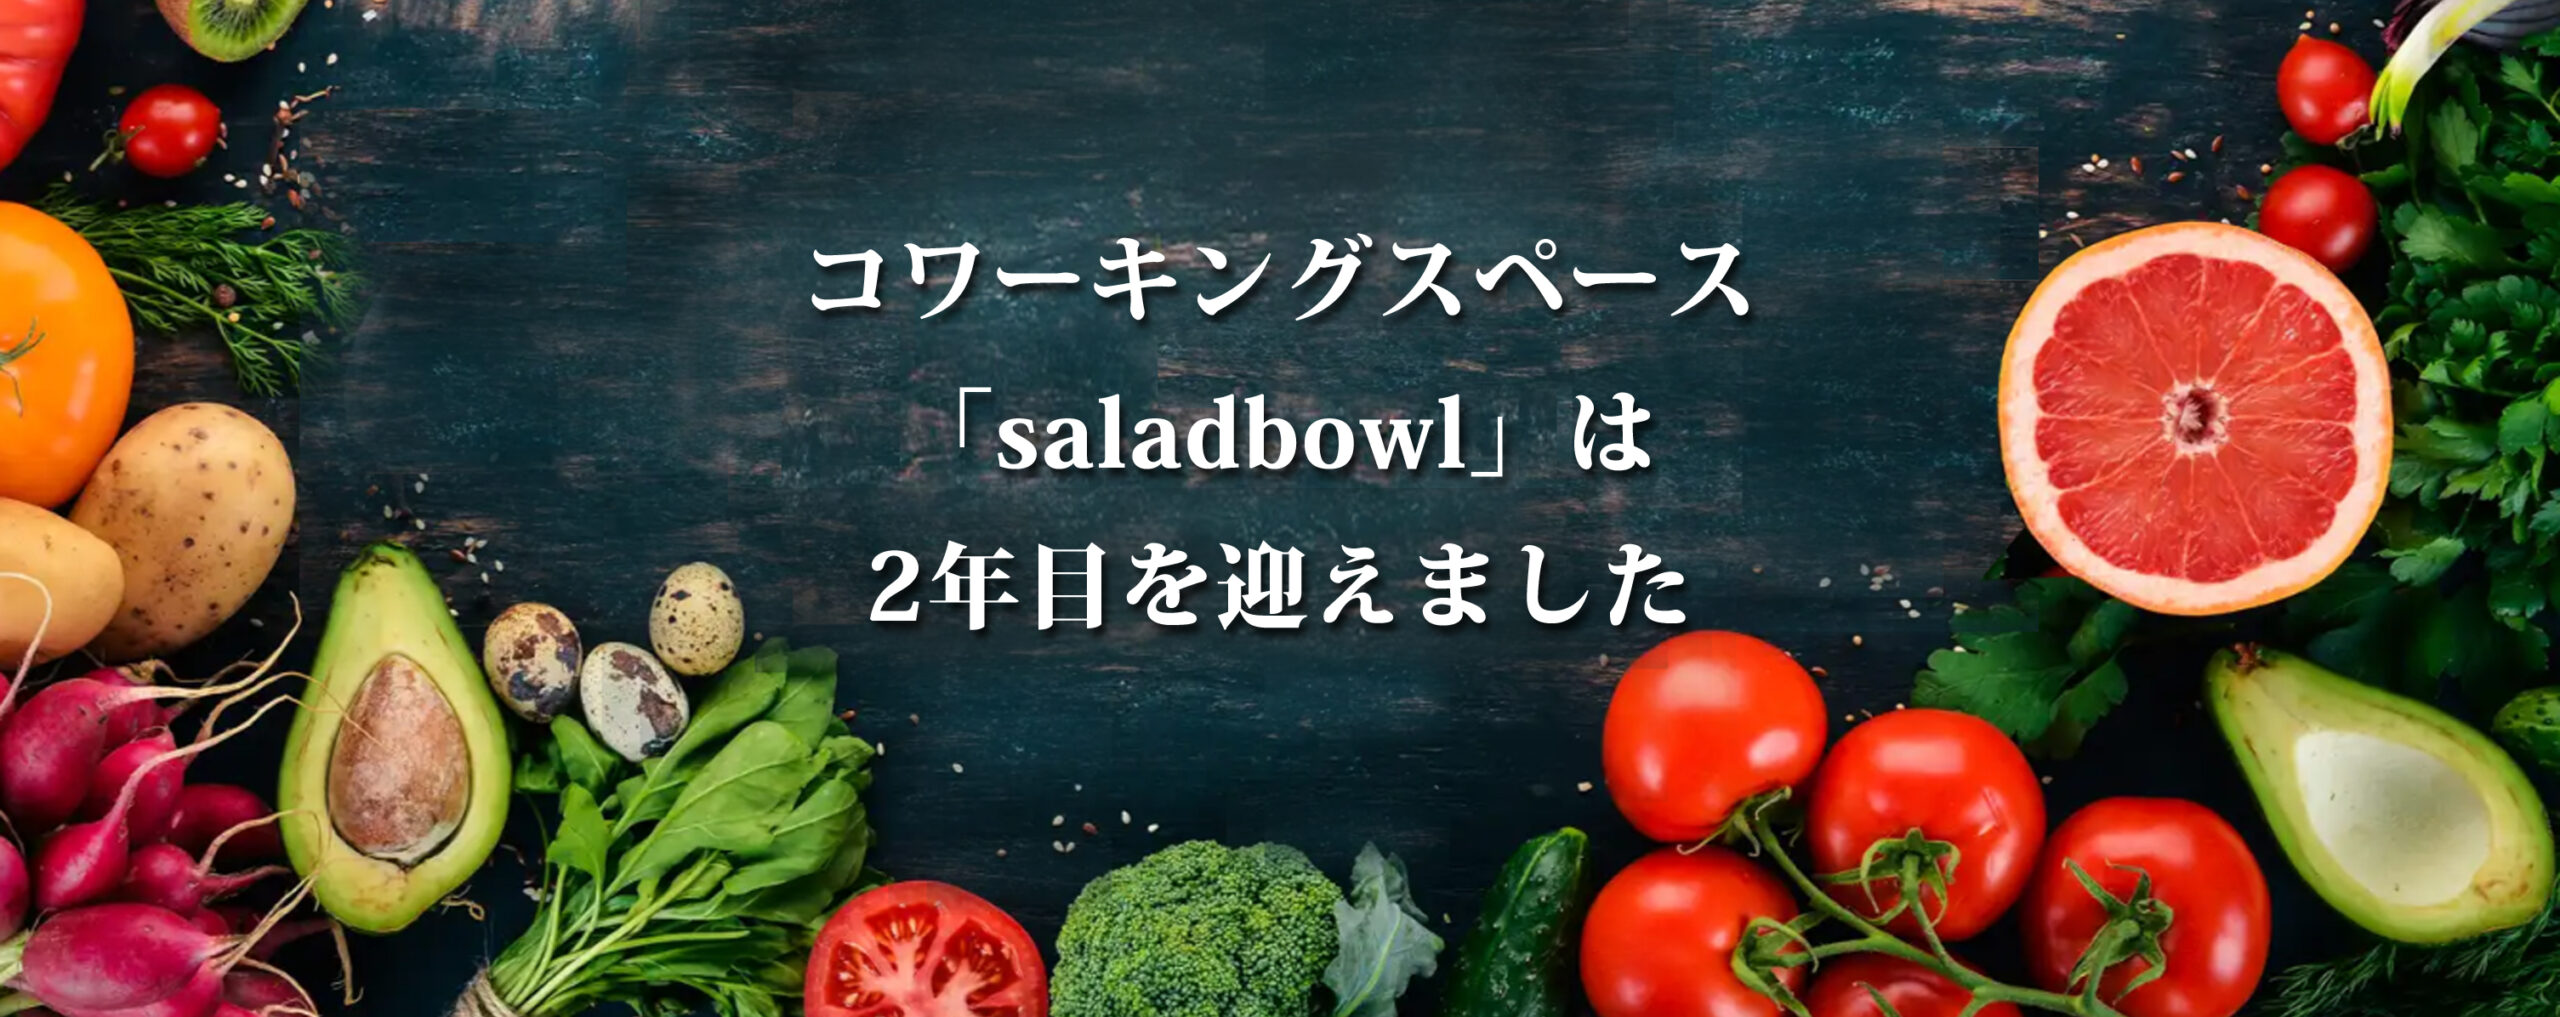 コワーキングスペース「saladbowl」は2年目を迎えました